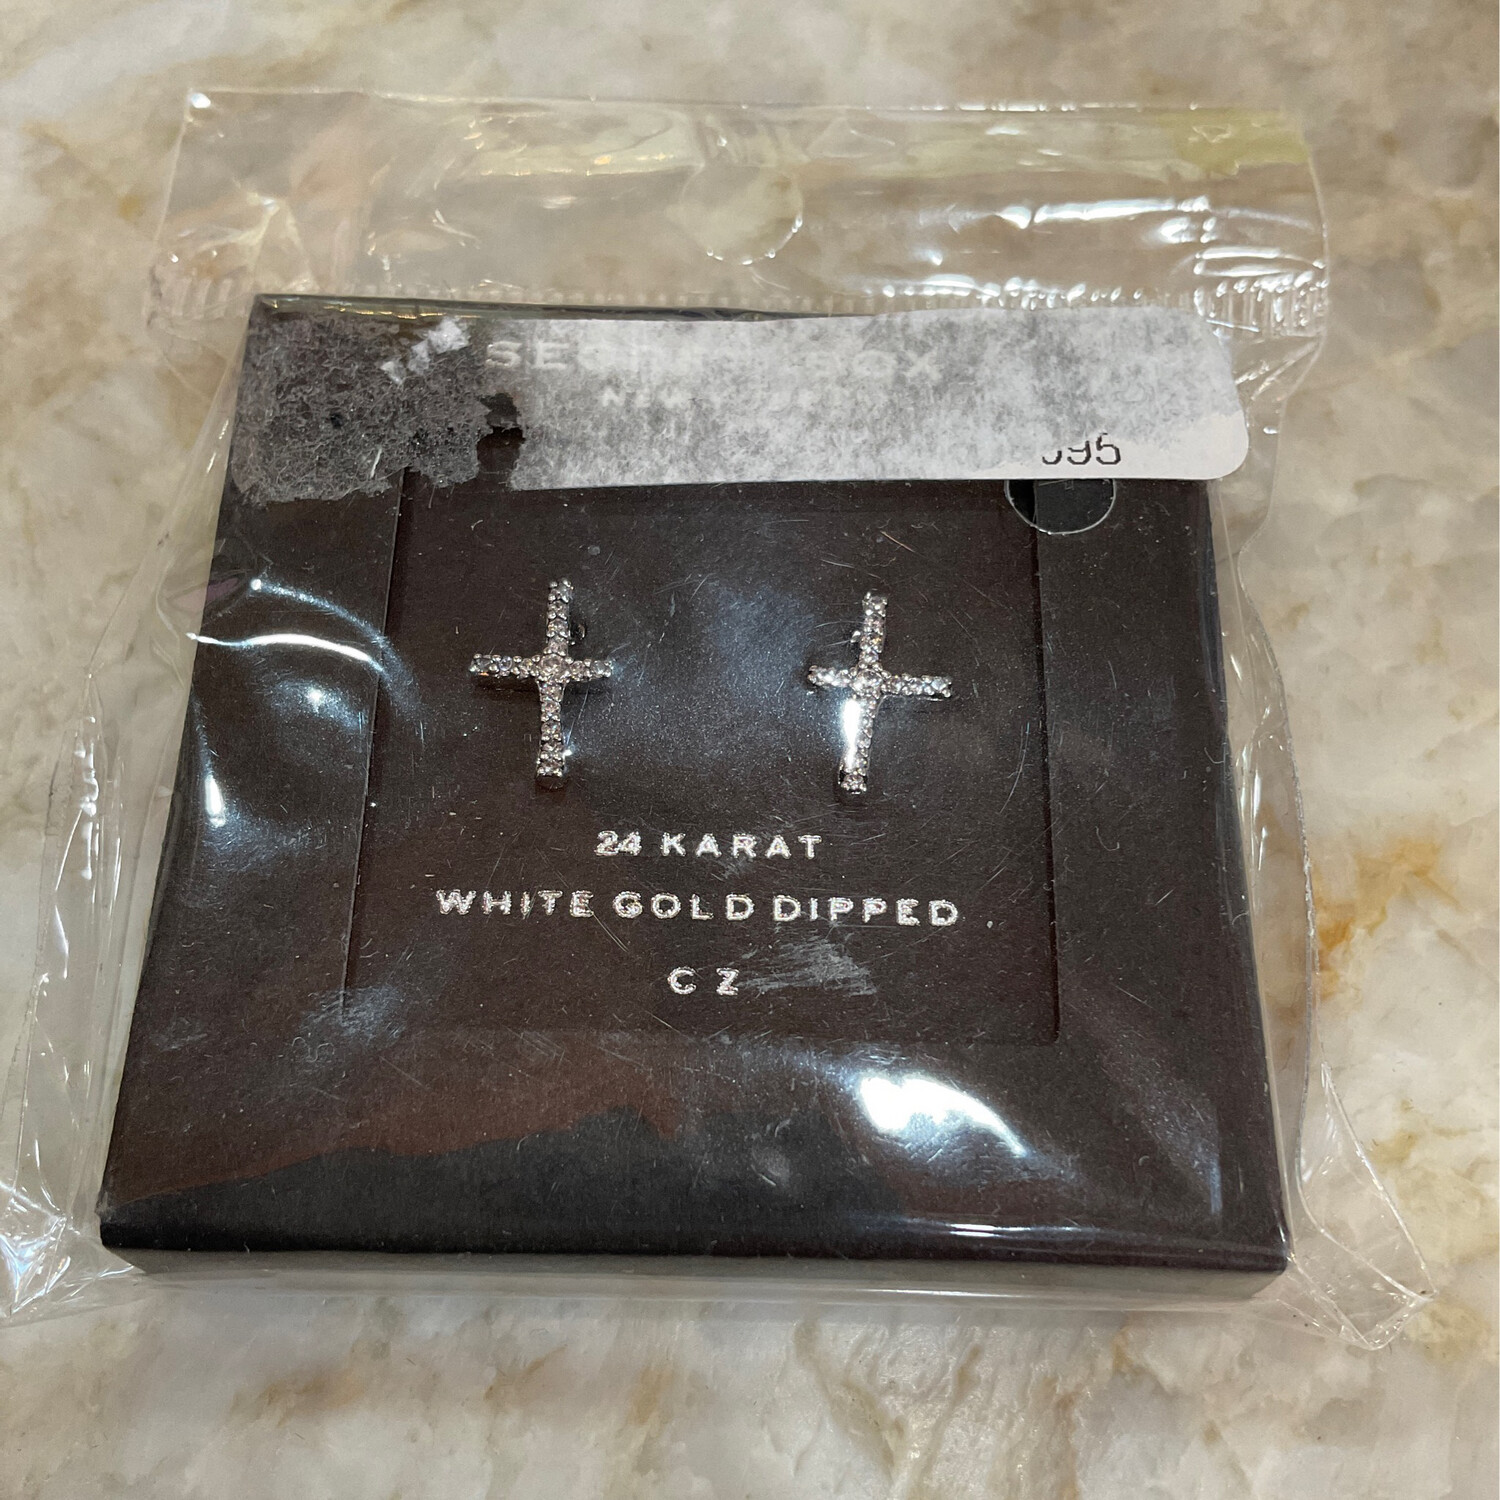 Zunic SB-10441WG White Gold Dipped Cross Earrings 